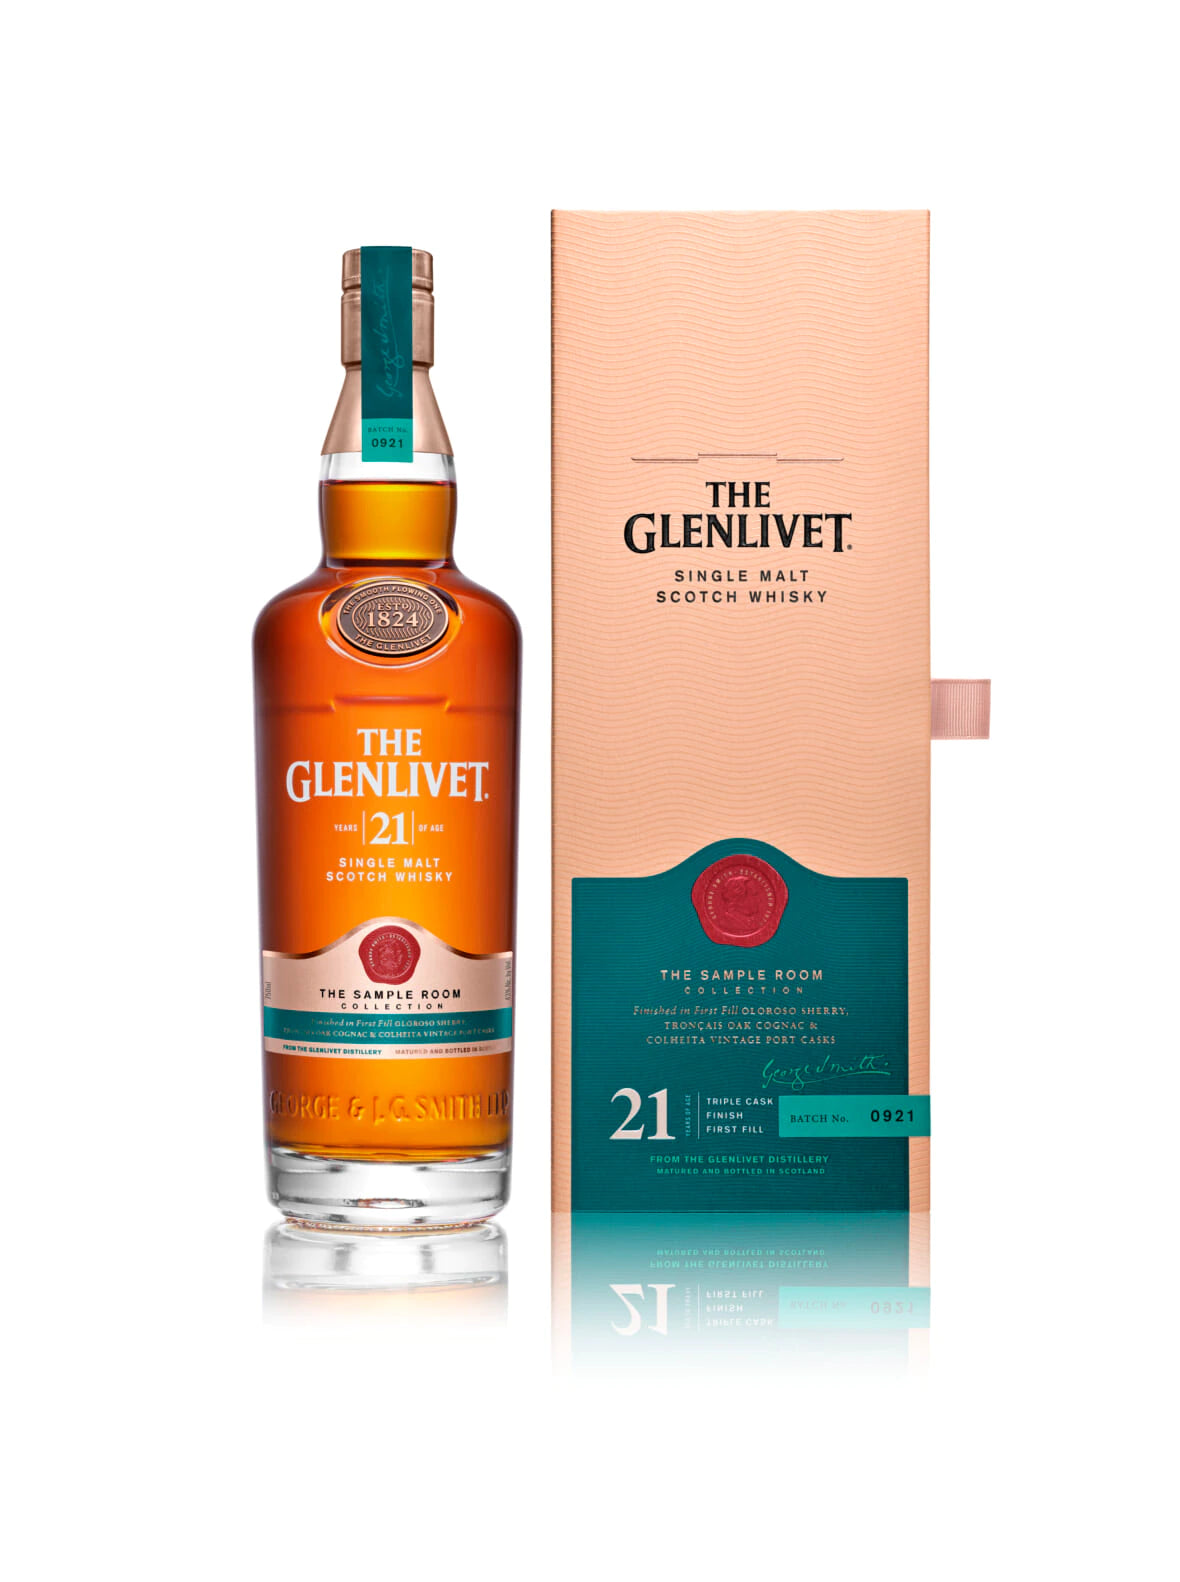 The Glenlivet 21 Year Archive Single Malt Scotch Whisky